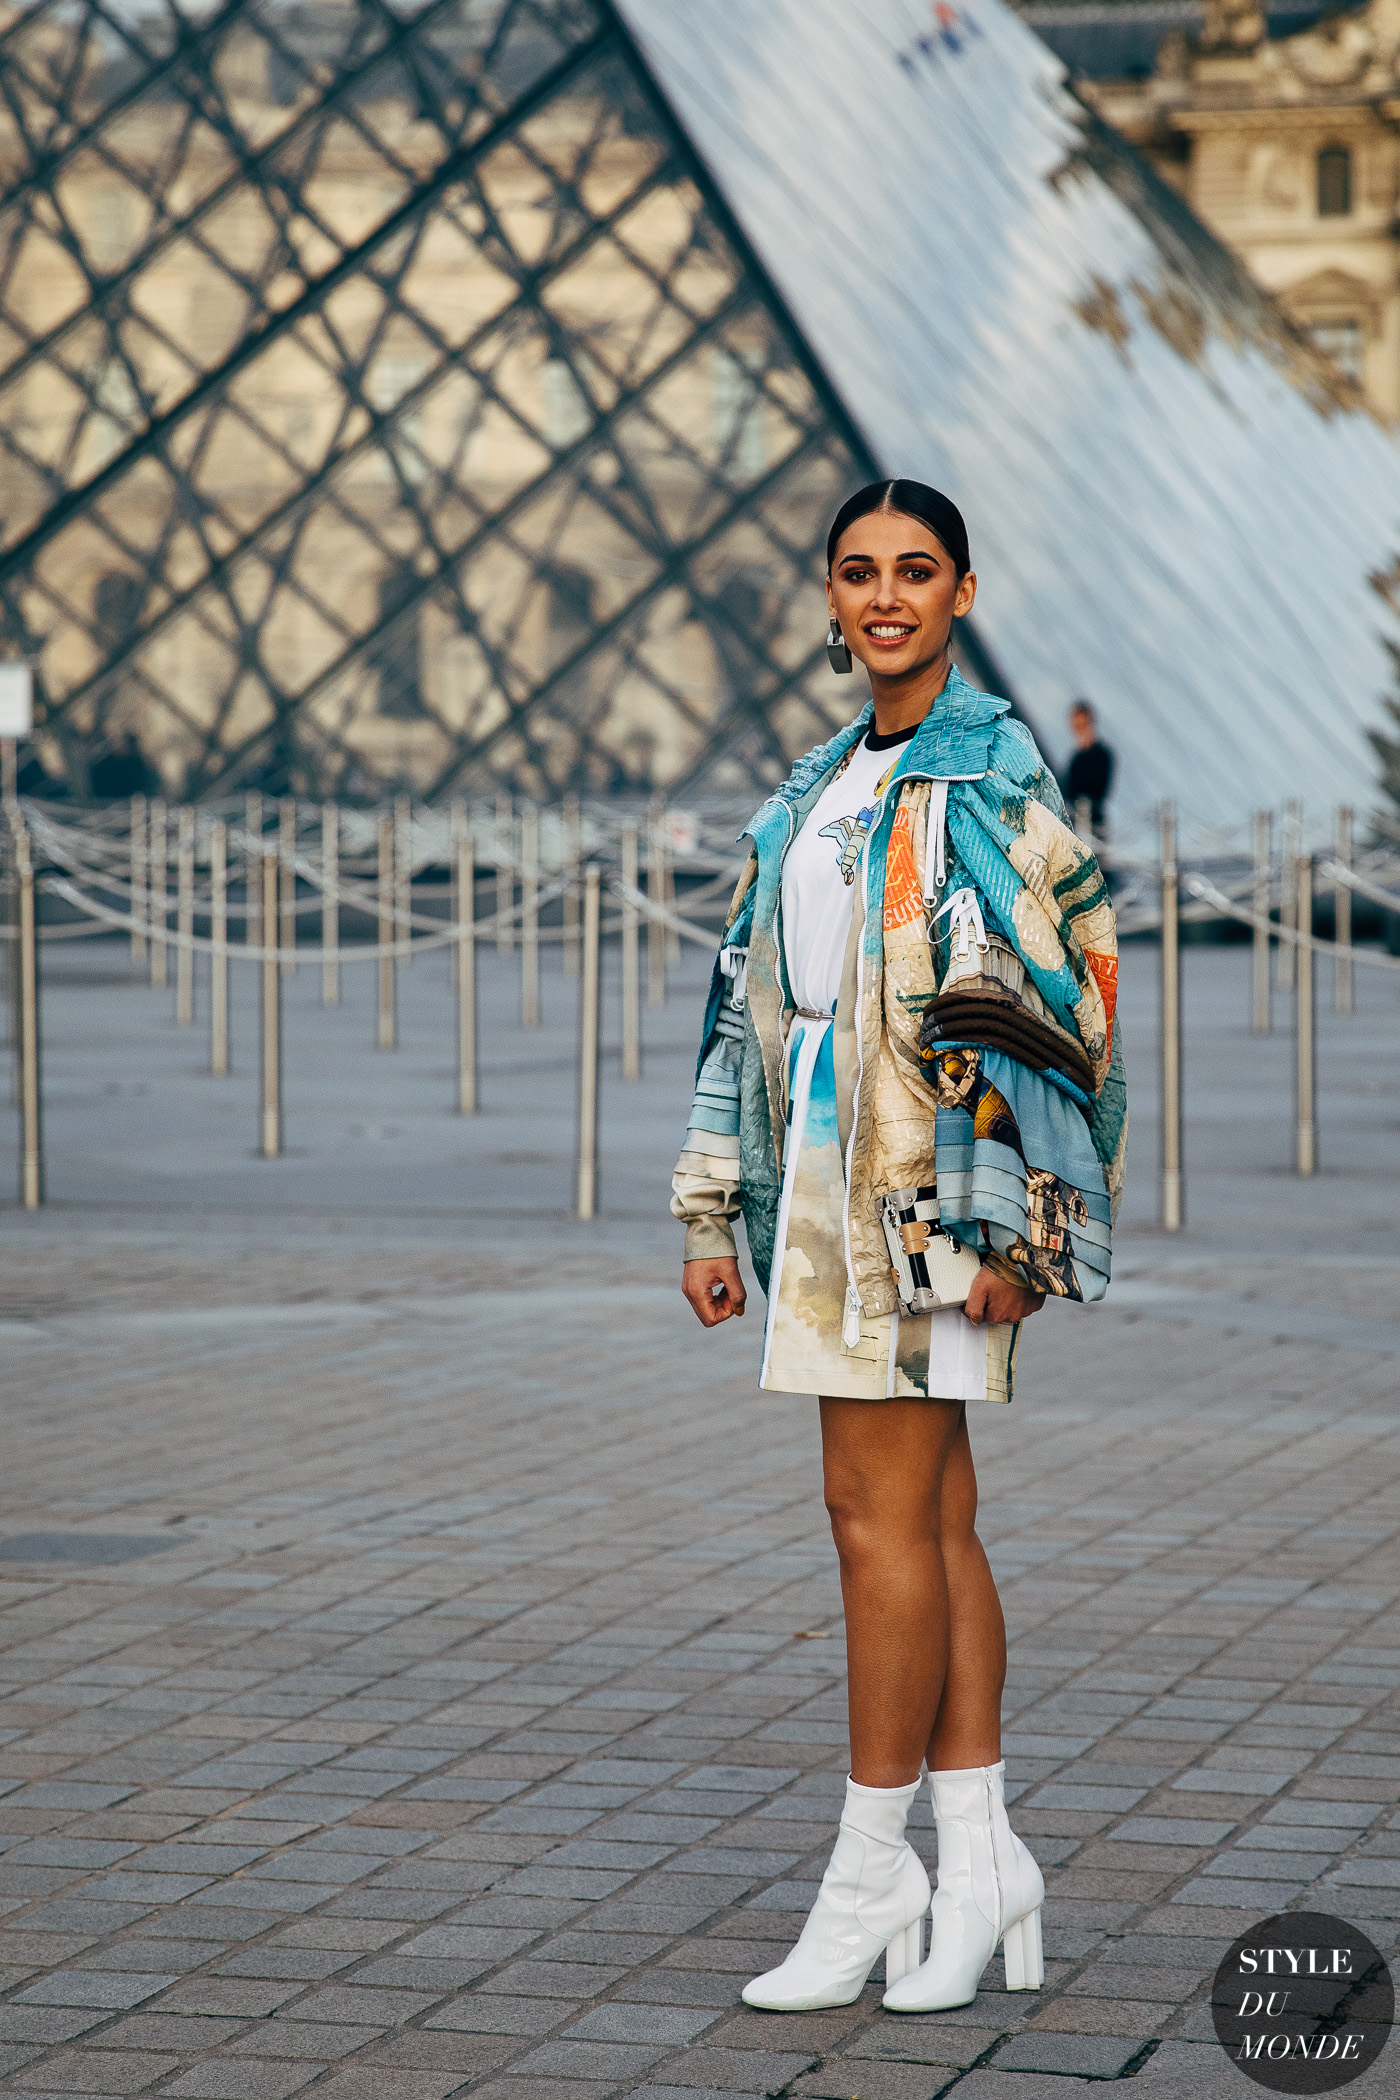 Paris FW 2019 Street Style: Naomi Scott - STYLE DU MONDE | Street Style ...